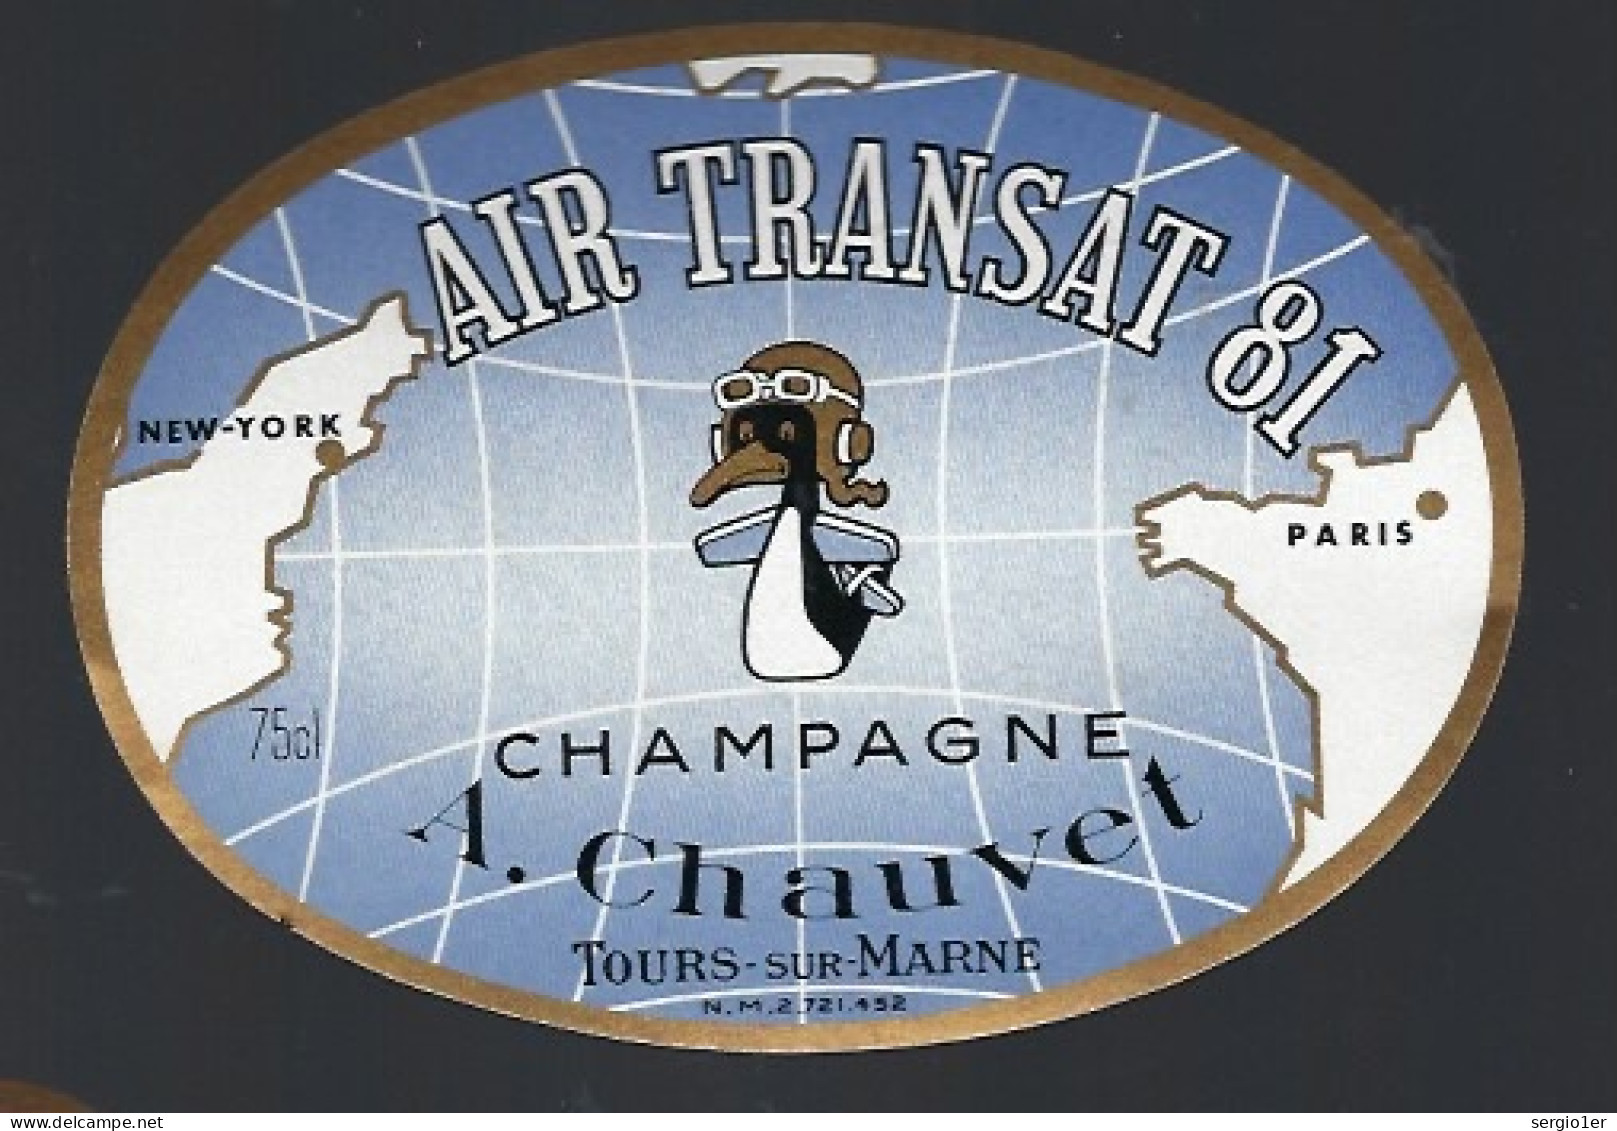 Rare Etiquette Champagne Cuvée Air Transat 81  A Chauvet Tours Sur Marne Marne 51" New York-Paris" Canard Aviation - Champagne